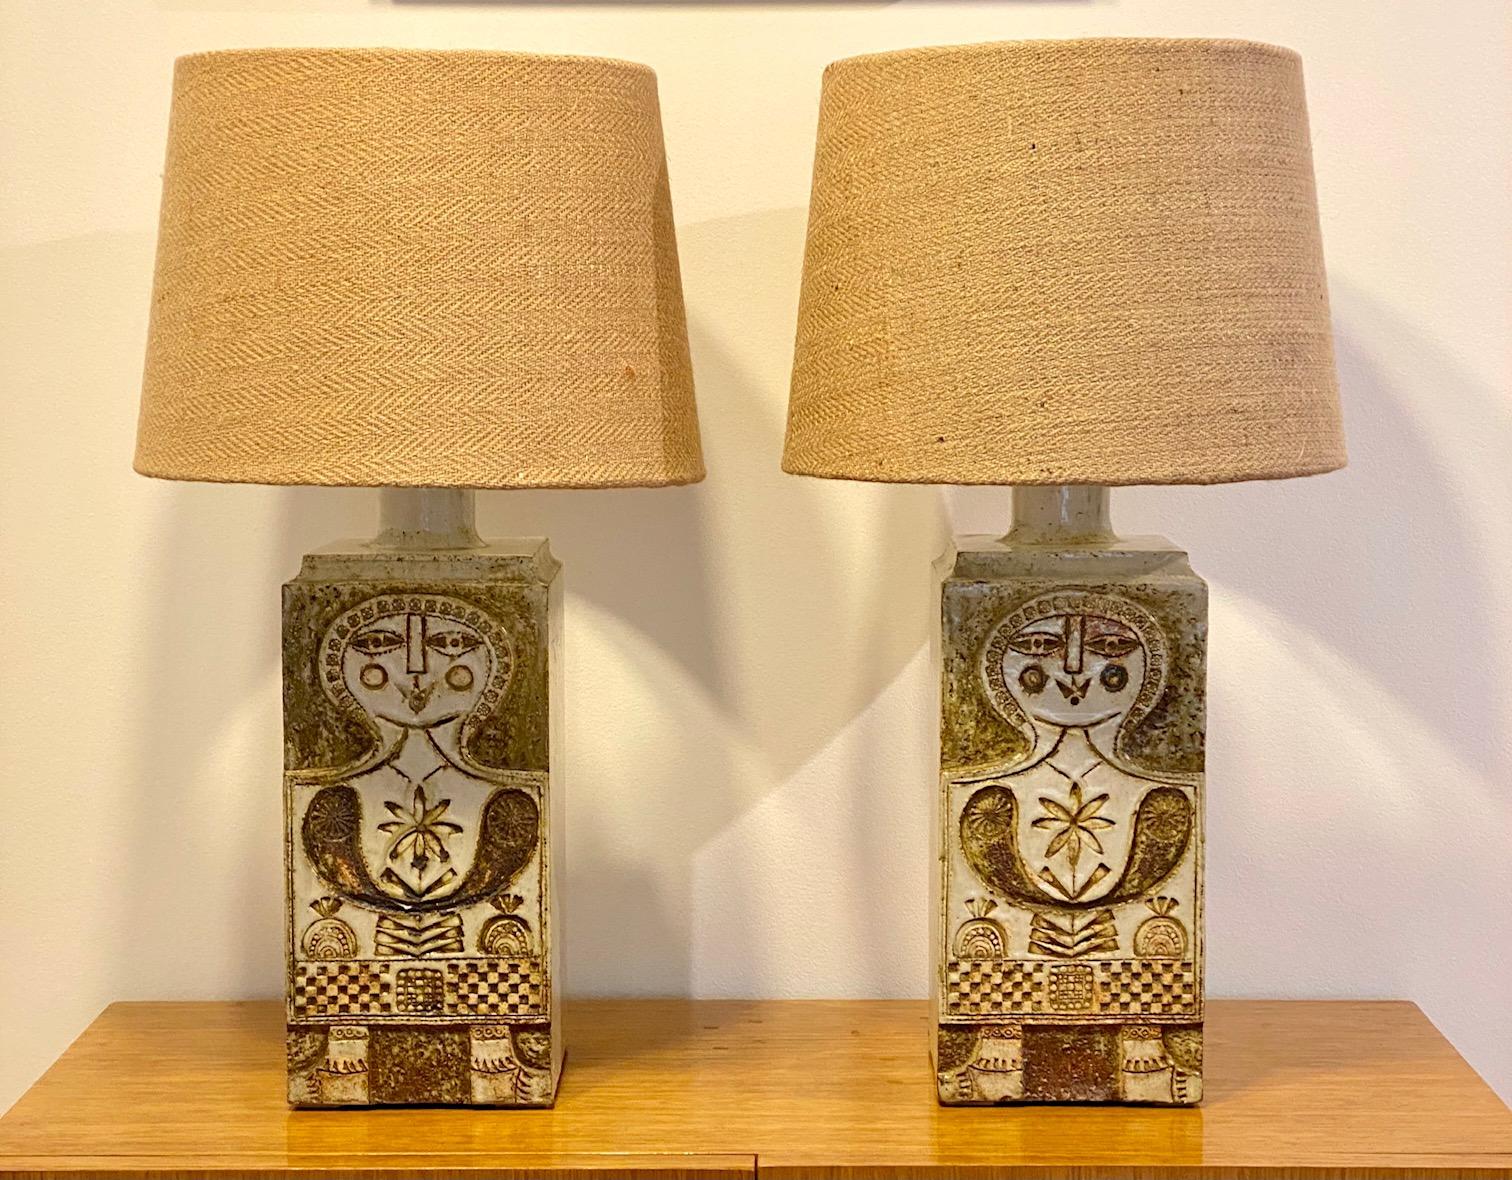 Roger Capron (1922-2006)
Paar keramische Lampenfüße mit Personifikationen
Hergestellt ca. 1960, signiert Capron, Vallauris, Frankreich
Maße der Keramik allein: H 35 cm ( H 55 cm mit Schirmen) 
Hinweis für internationale Käufer:
Diese Lampen